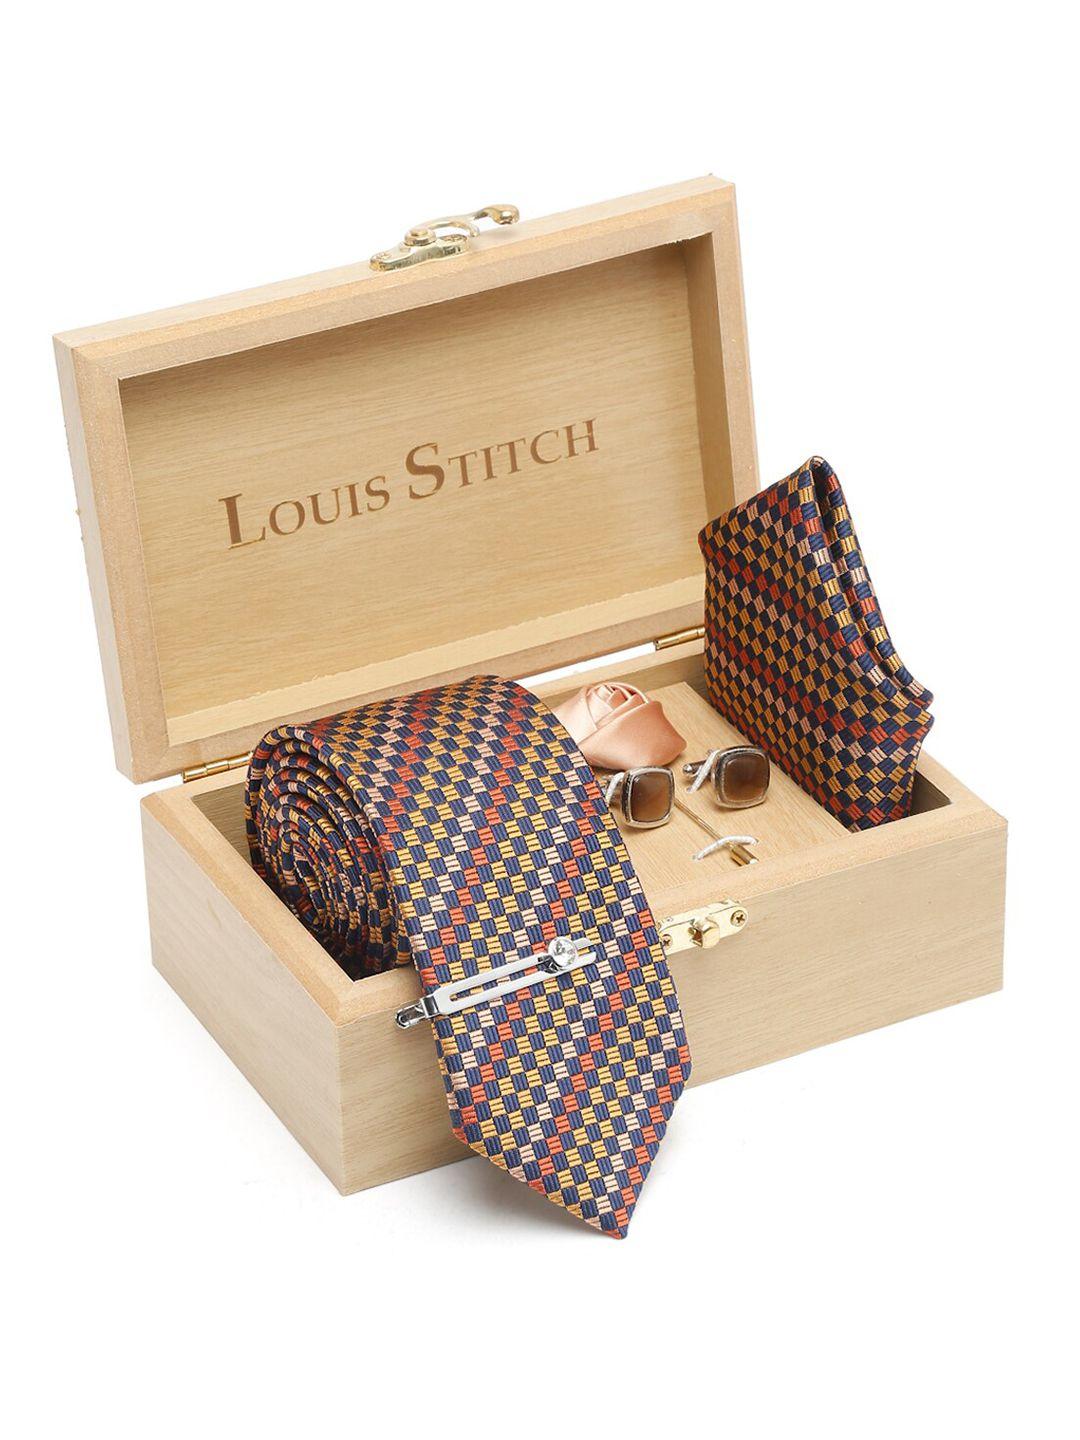 louis stitch woven design necktie accessory gift set